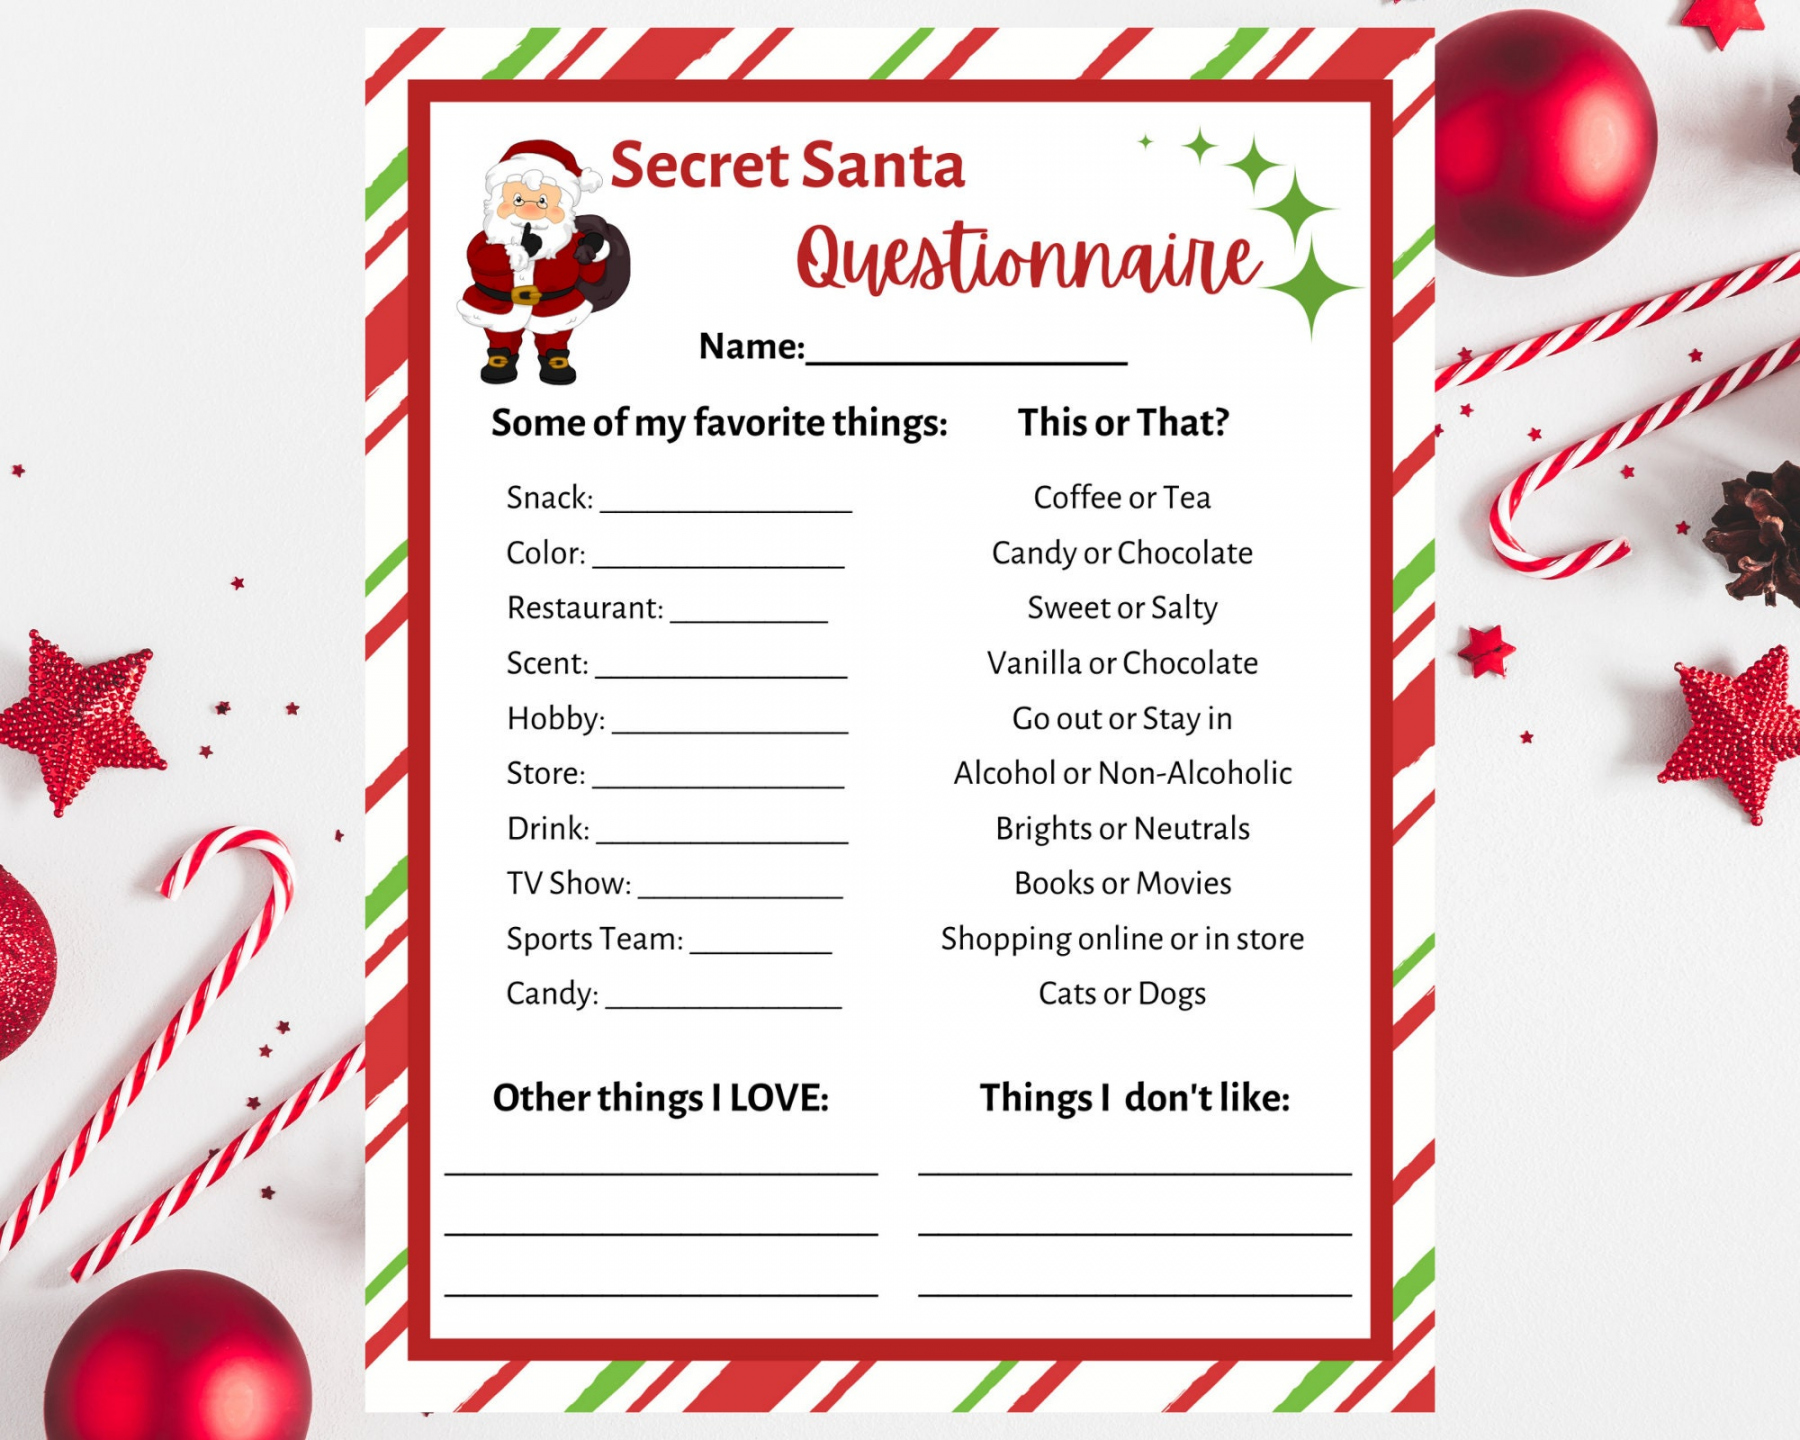 Secret Santa Questionnaire Printable. Secret Santa Form - Free Printable Secret Santa Questions